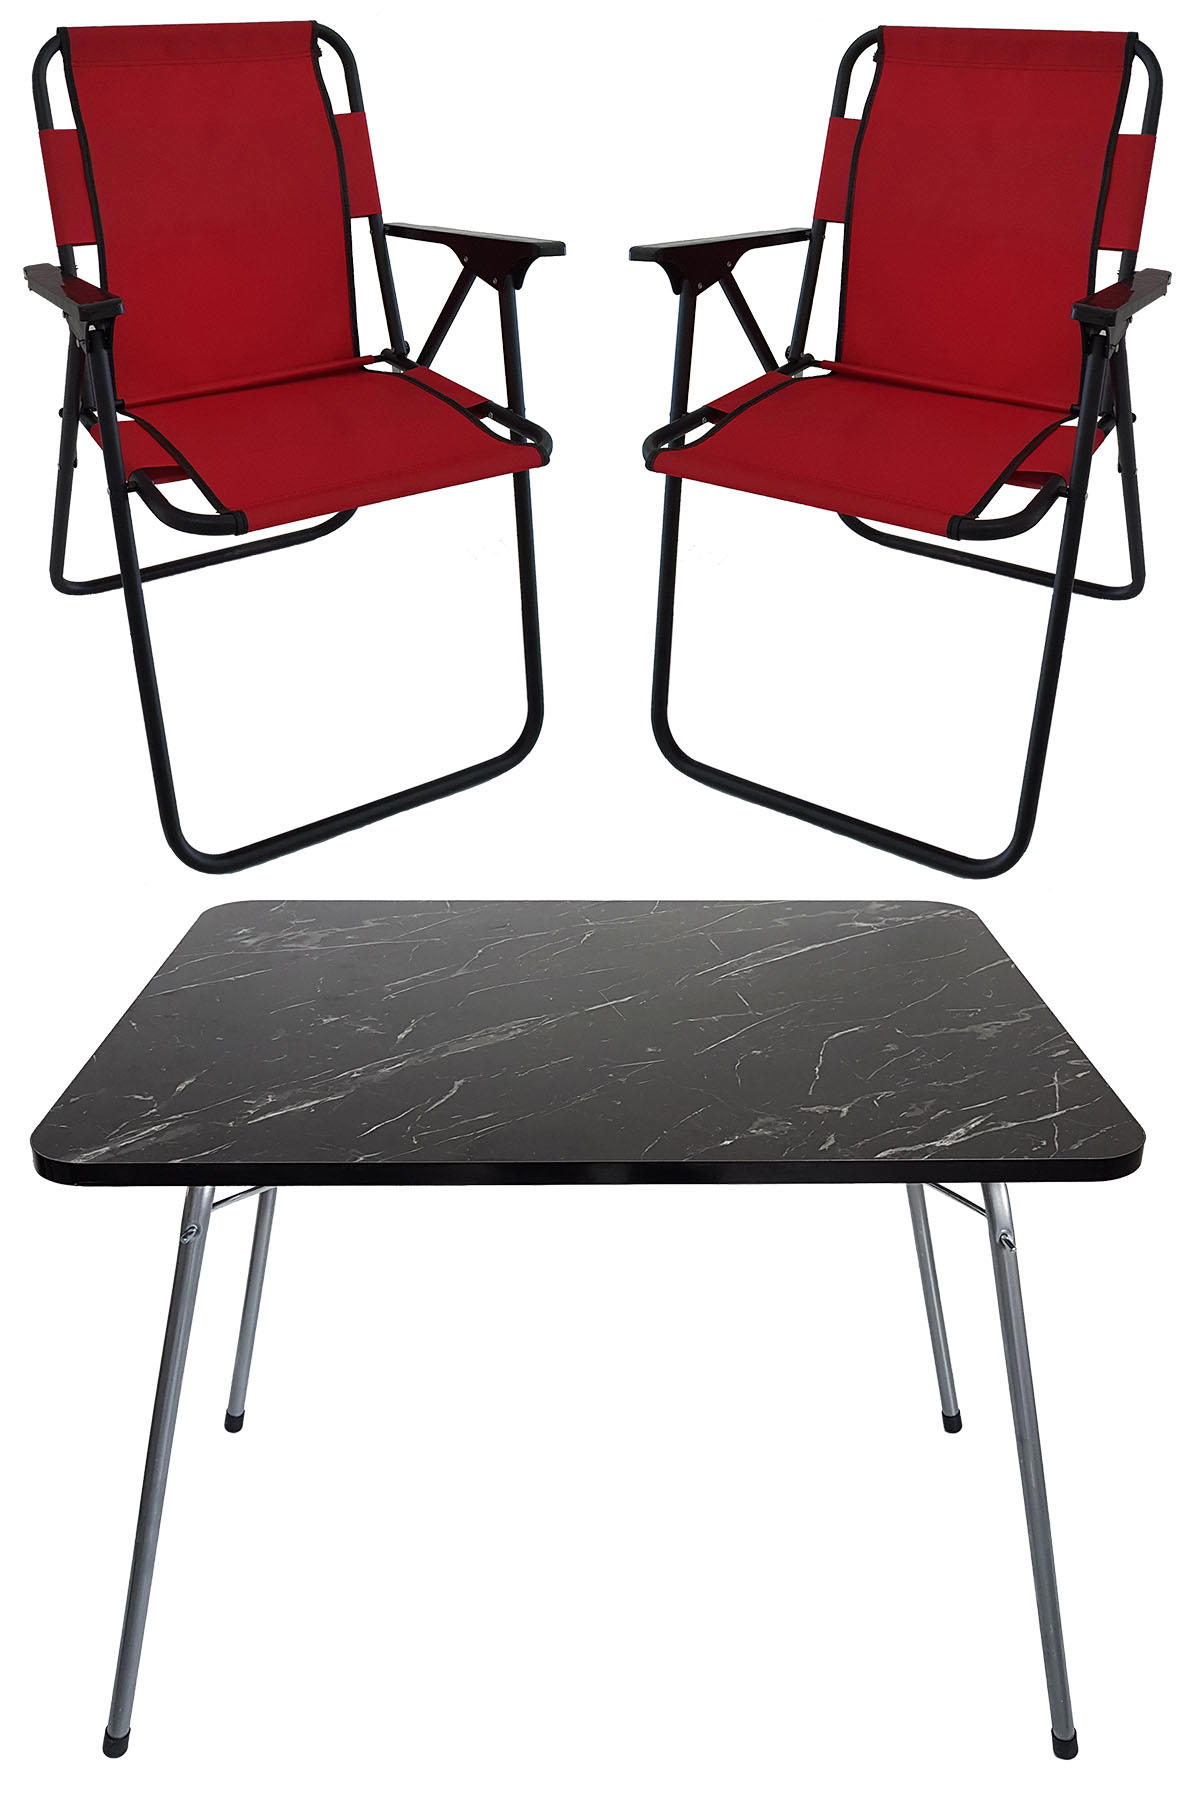 Bofigo 60 x 80 cm Tabureli Çantalı Dikdörtgen Granit Katlanır Kamp Masası Kırmızı + 2 Adet Katlanır Sandalye Kırmızı